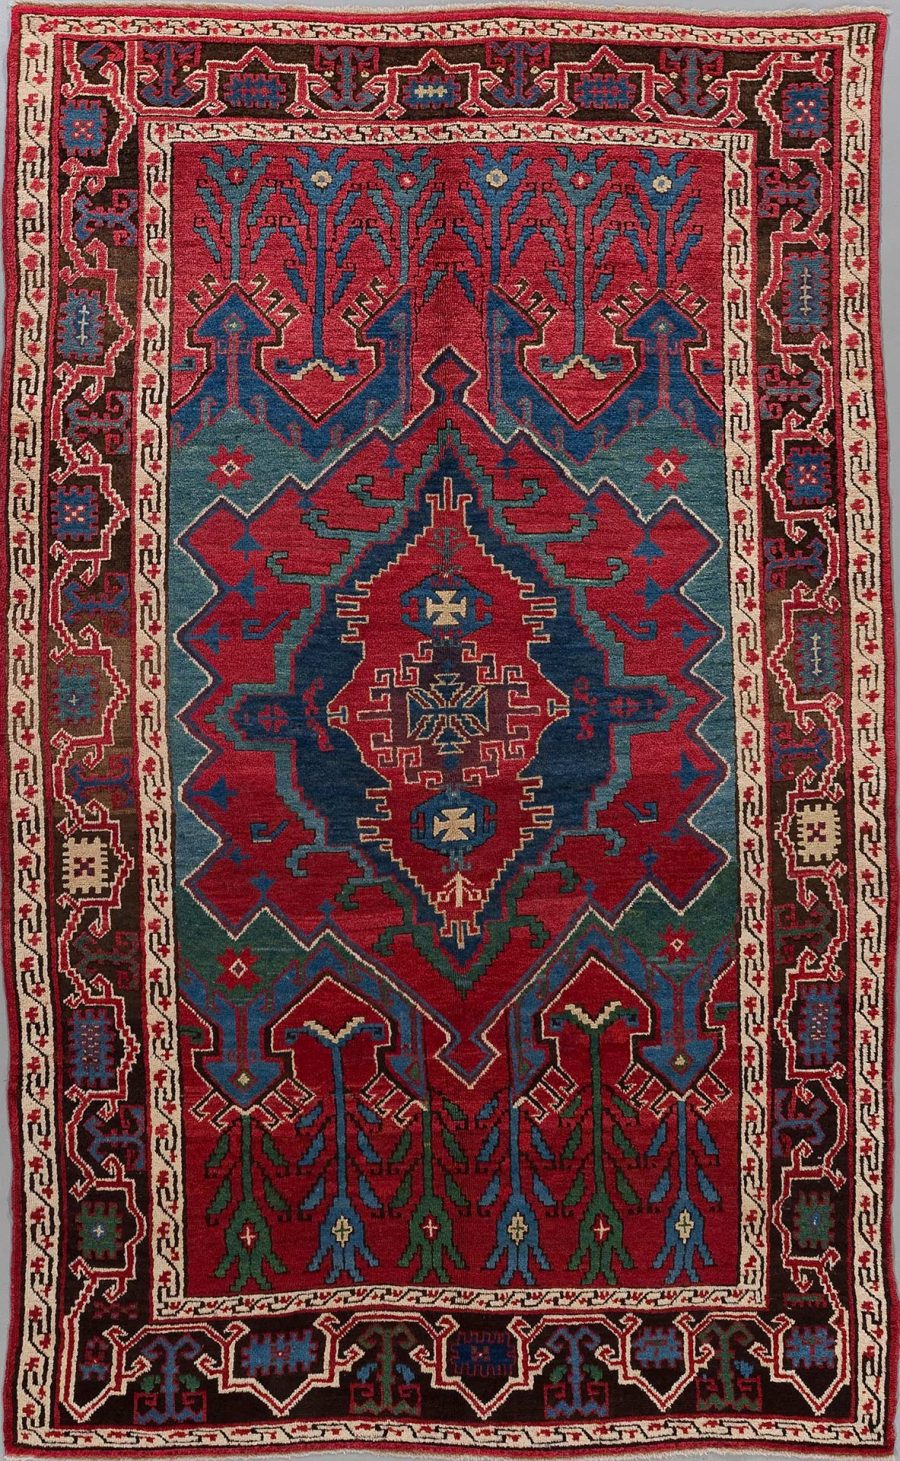 Traditioneller handgewebter Teppich mit komplexem Geometriemuster in den Farben Rot, Blau, Grün und Beige mit zentriertem Diamant-Design und mehrfachen, dekorativen Bordüren.